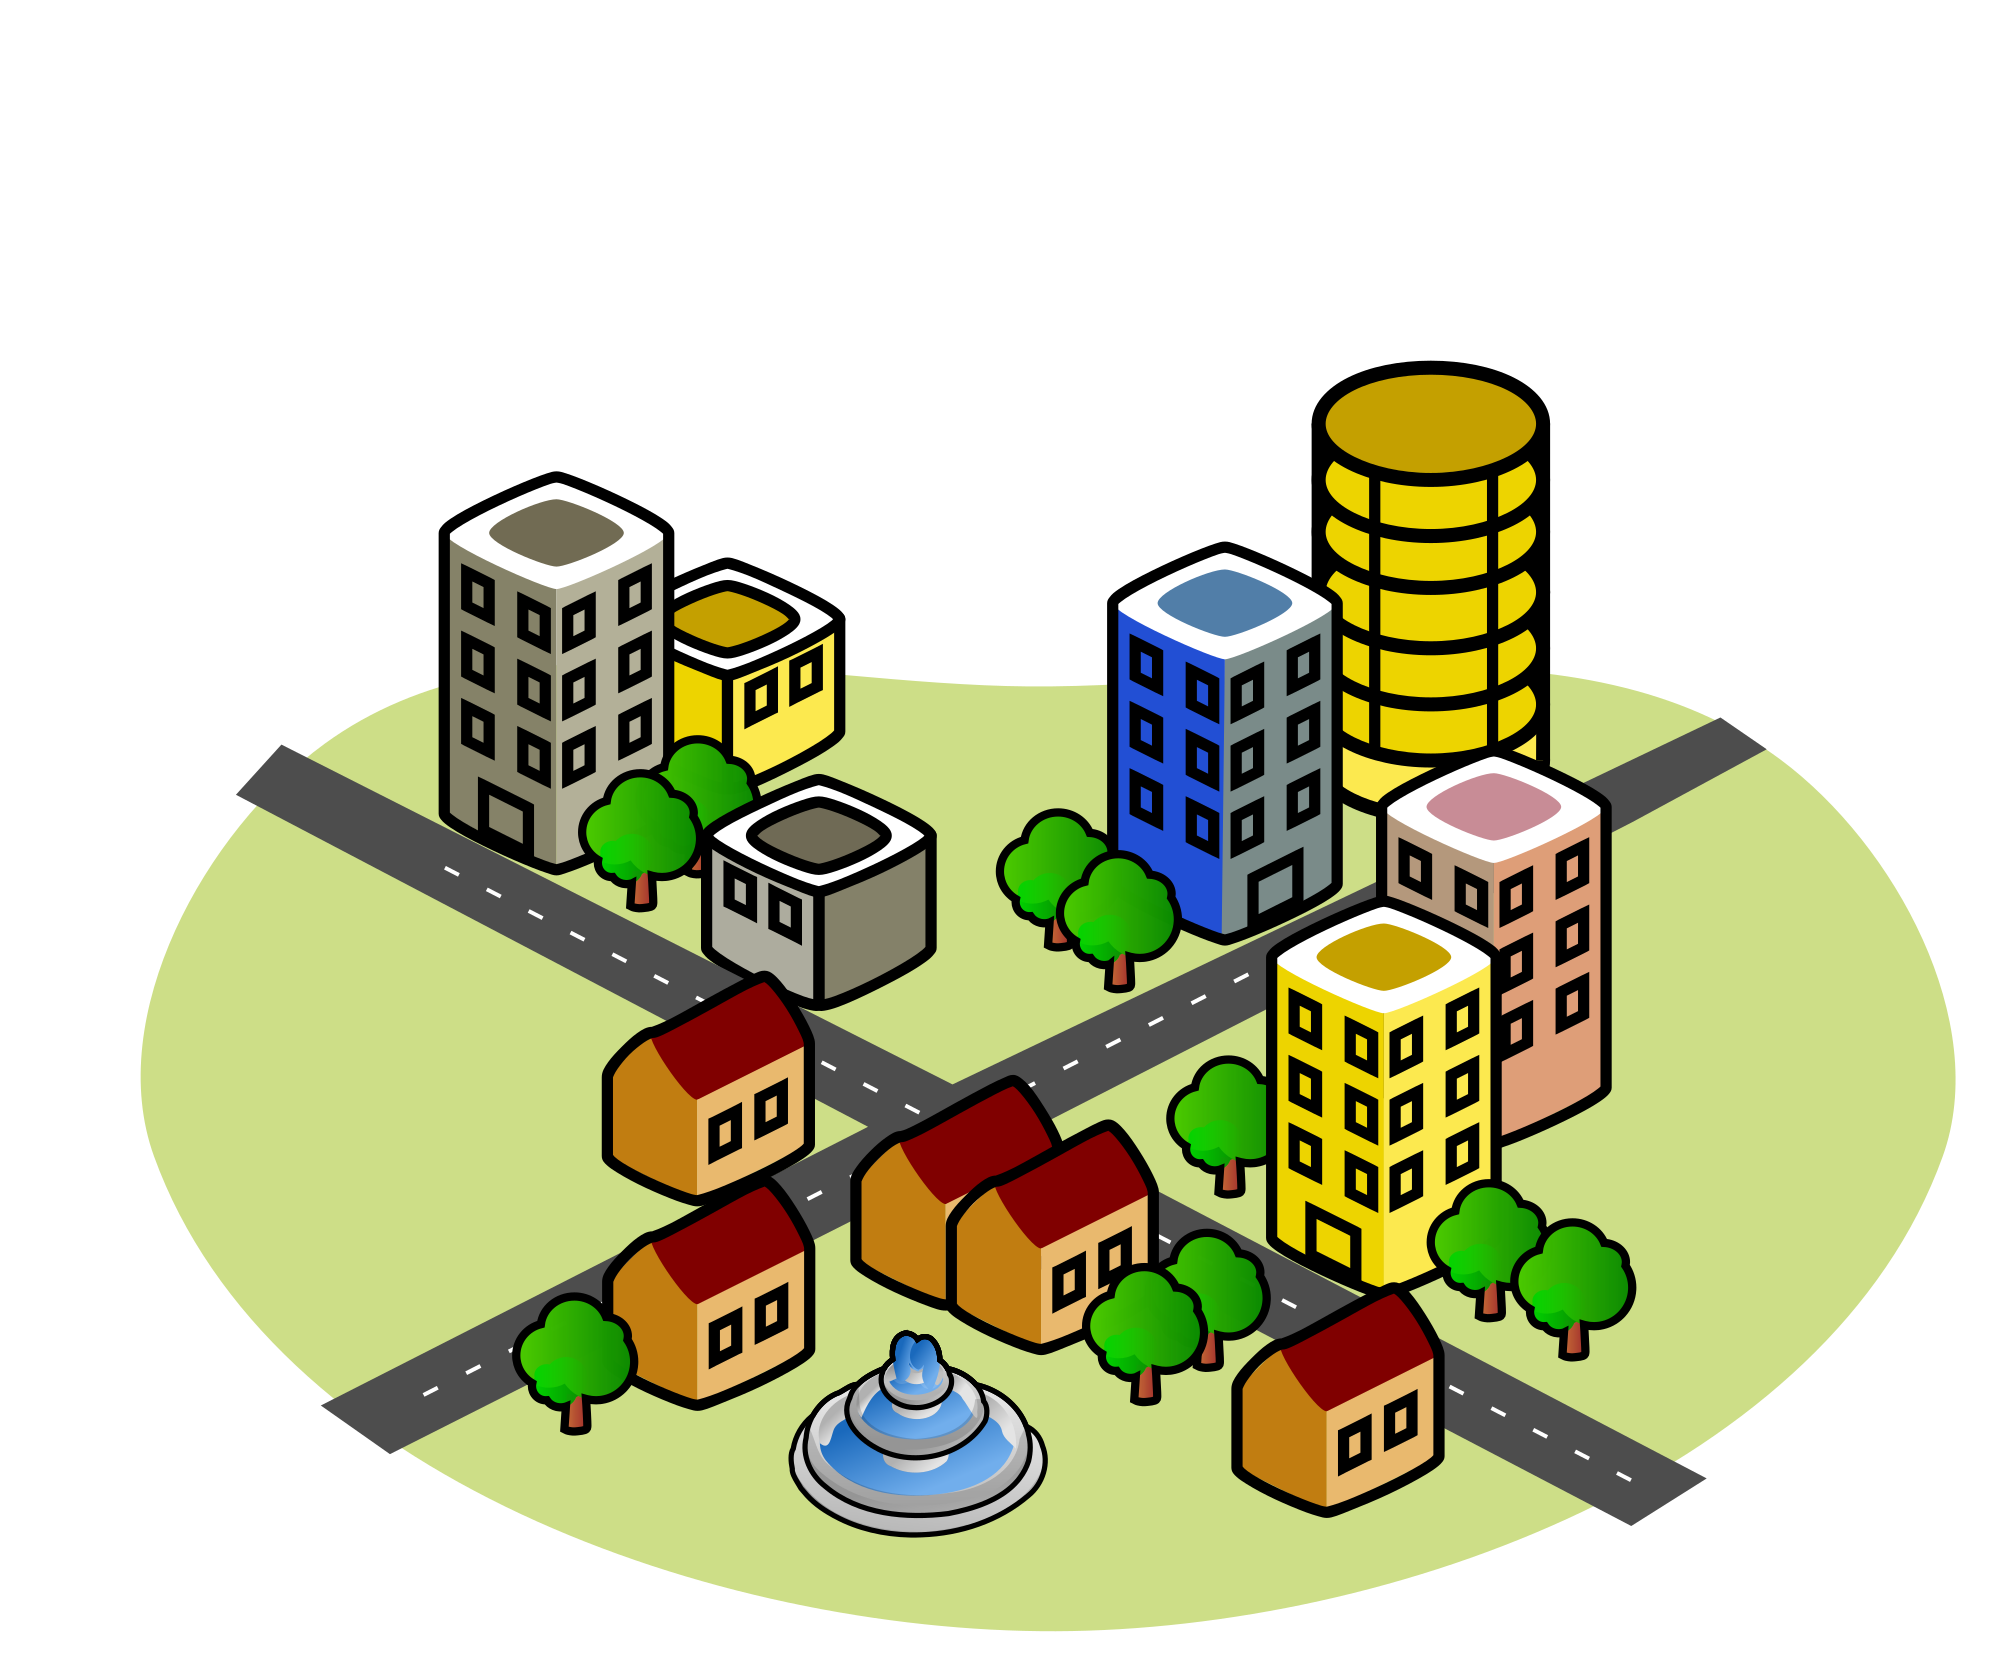 La imagen muestra una ciudad con dos calles transversales y diversos edificios altos y casas a sus lados